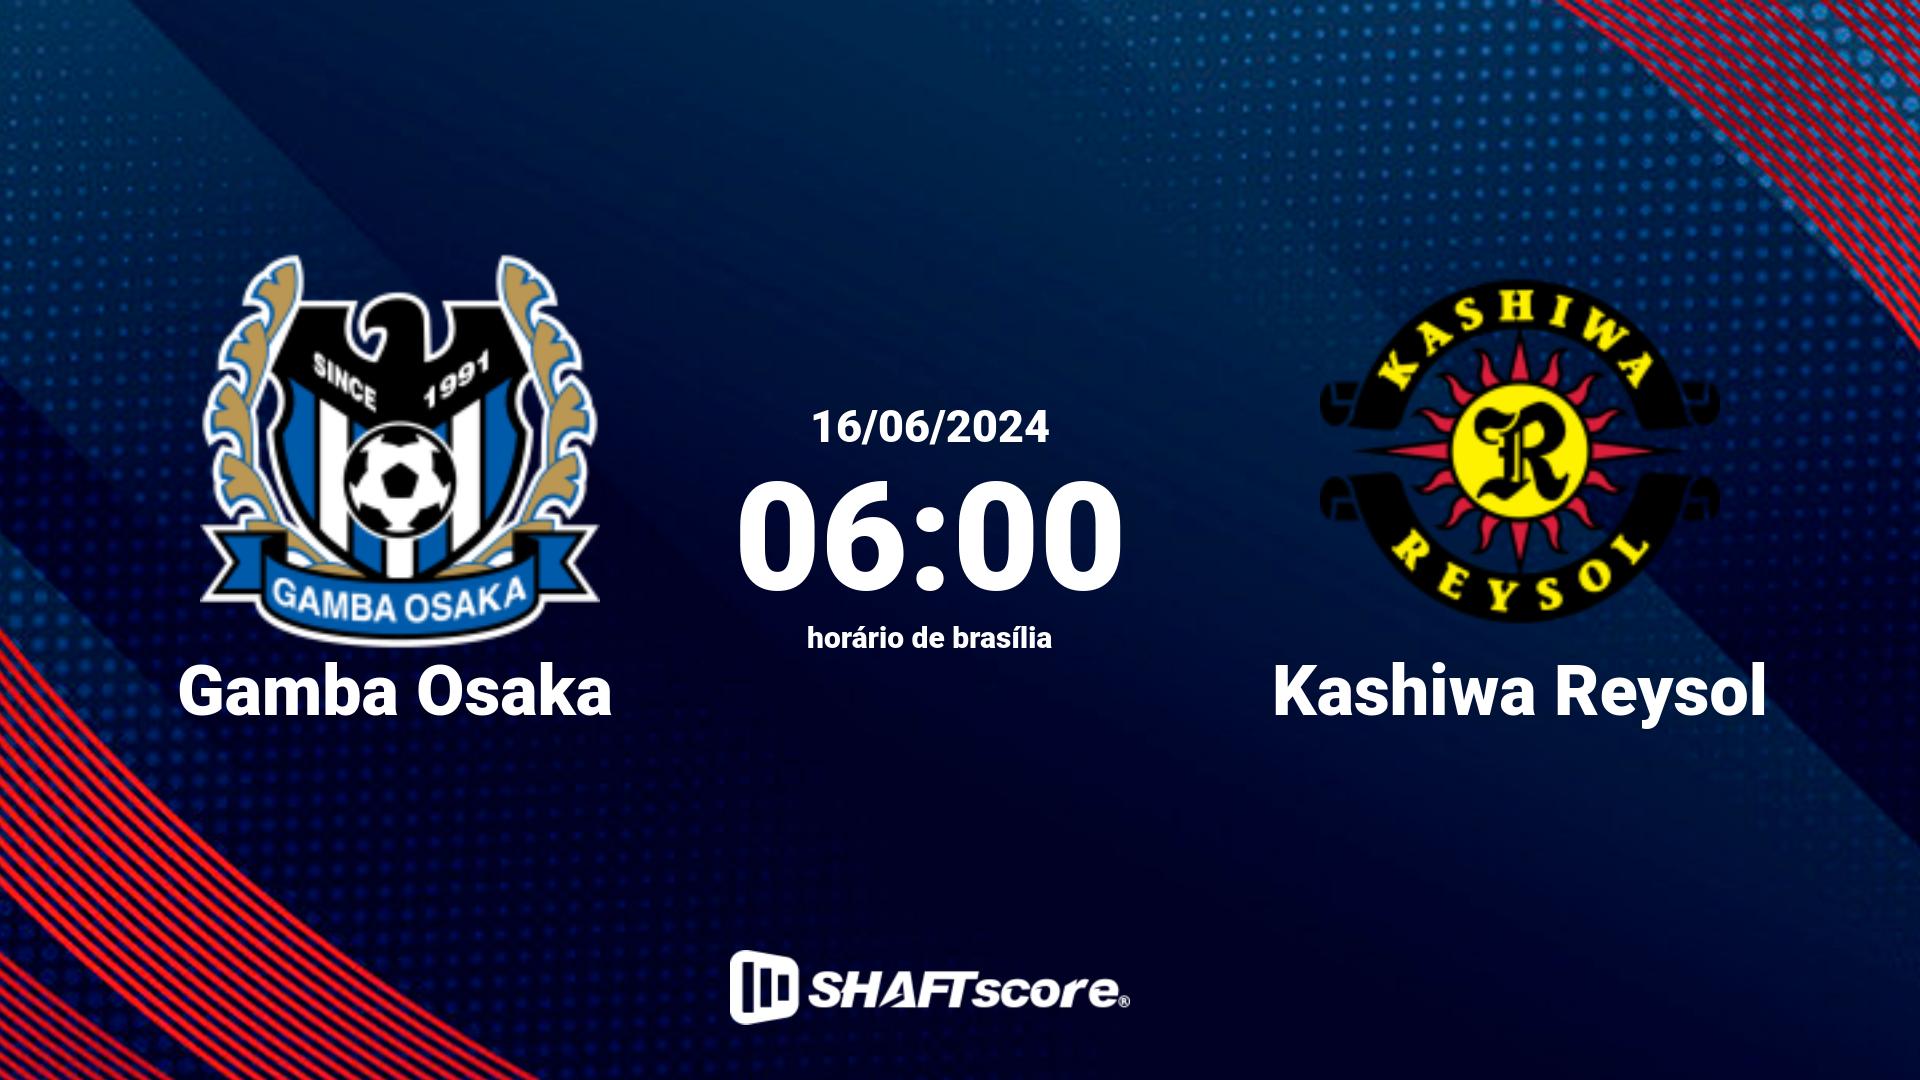 Estatísticas do jogo Gamba Osaka vs Kashiwa Reysol 16.06 06:00